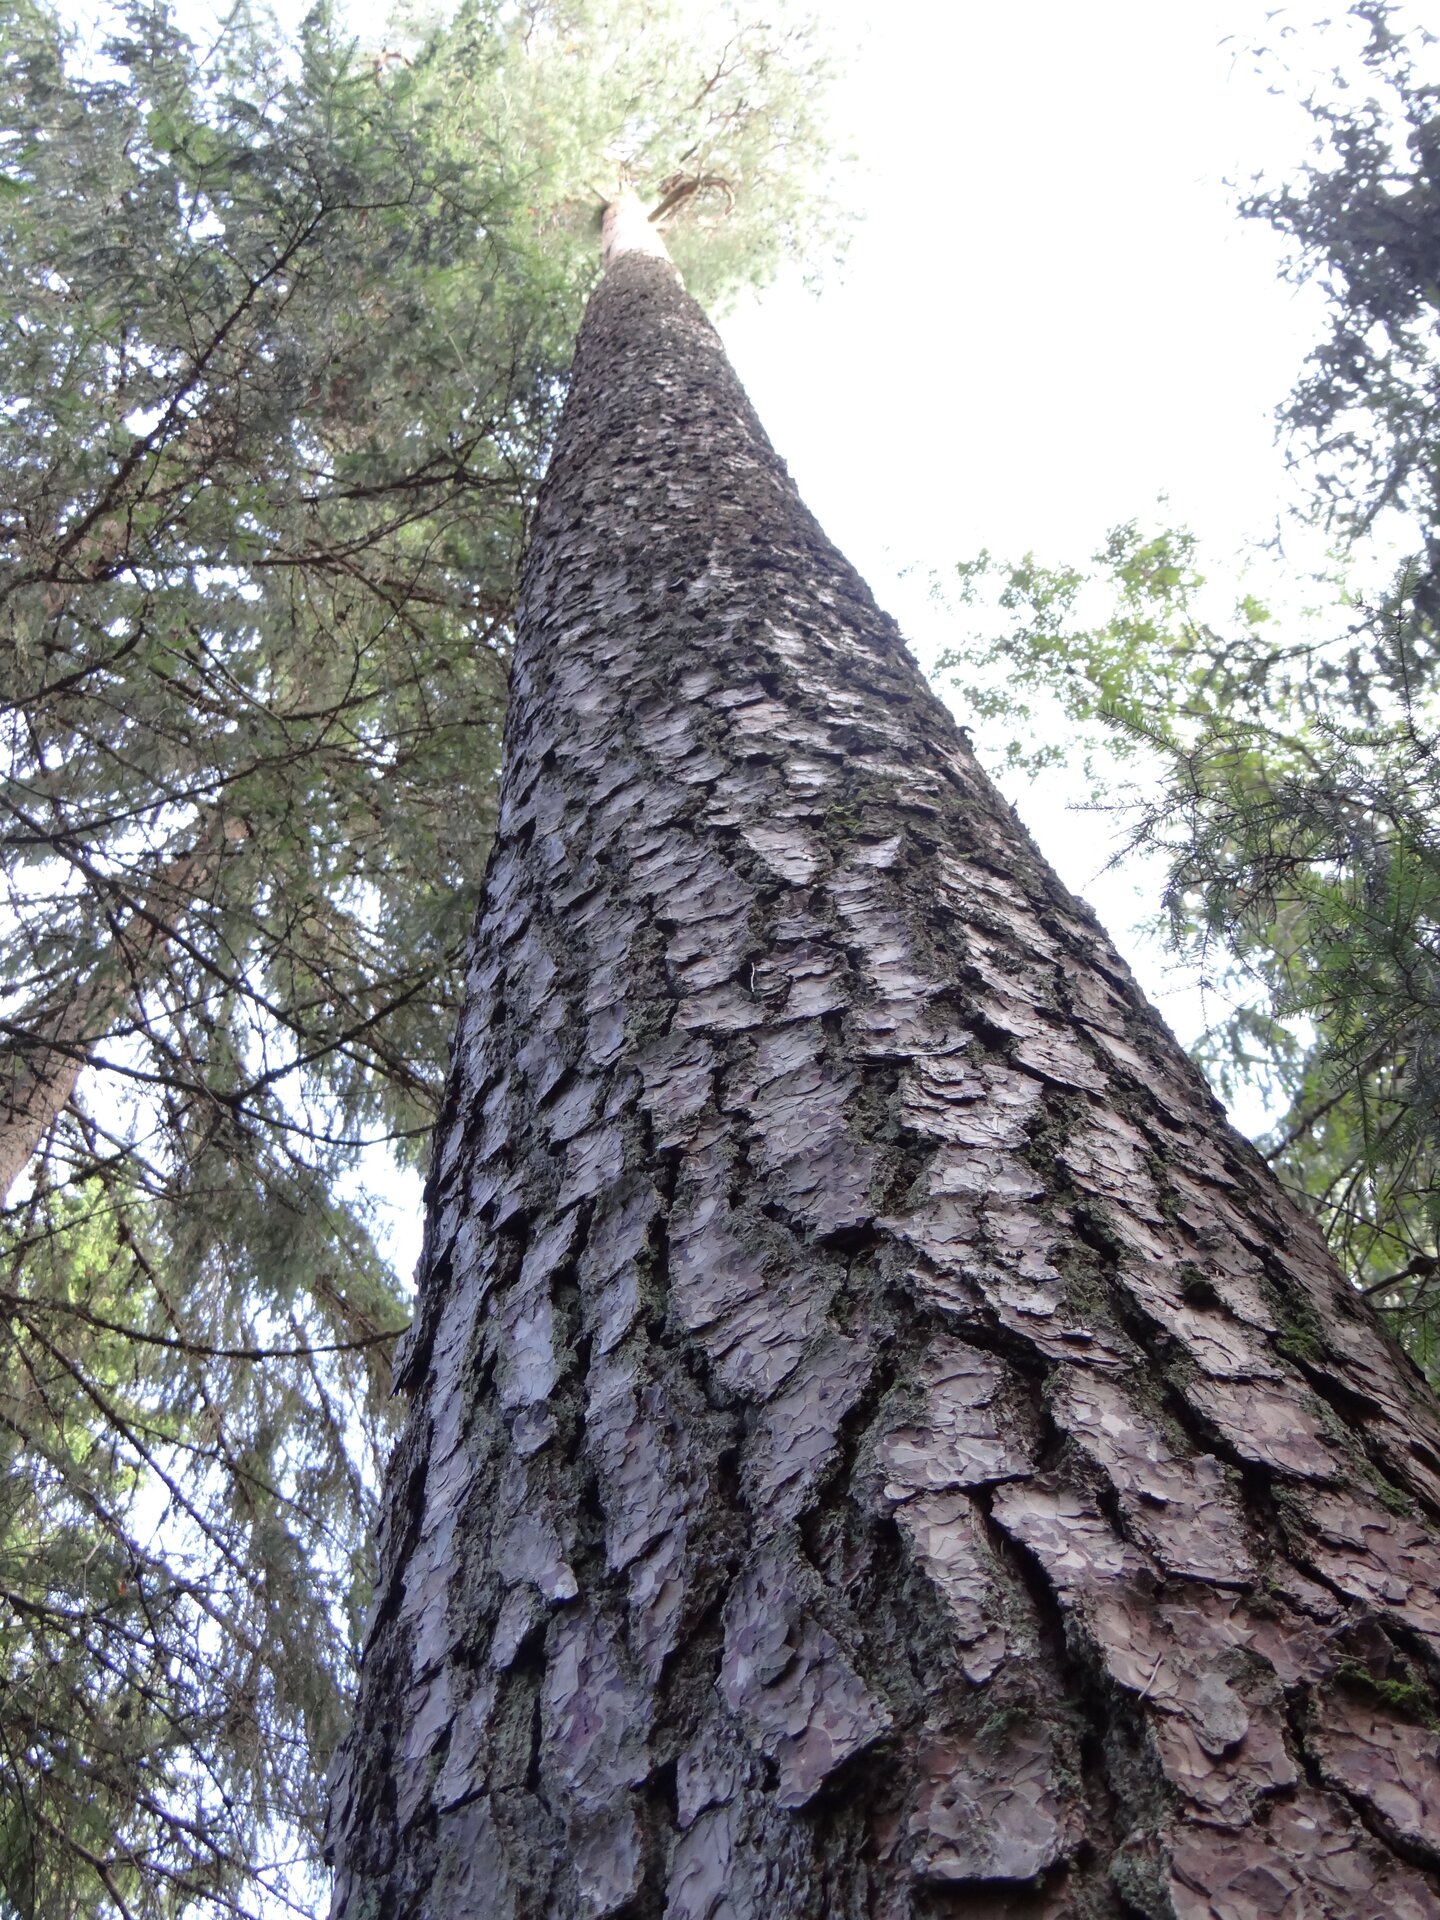 Estlands größter Baum, Estlands ältester Baum